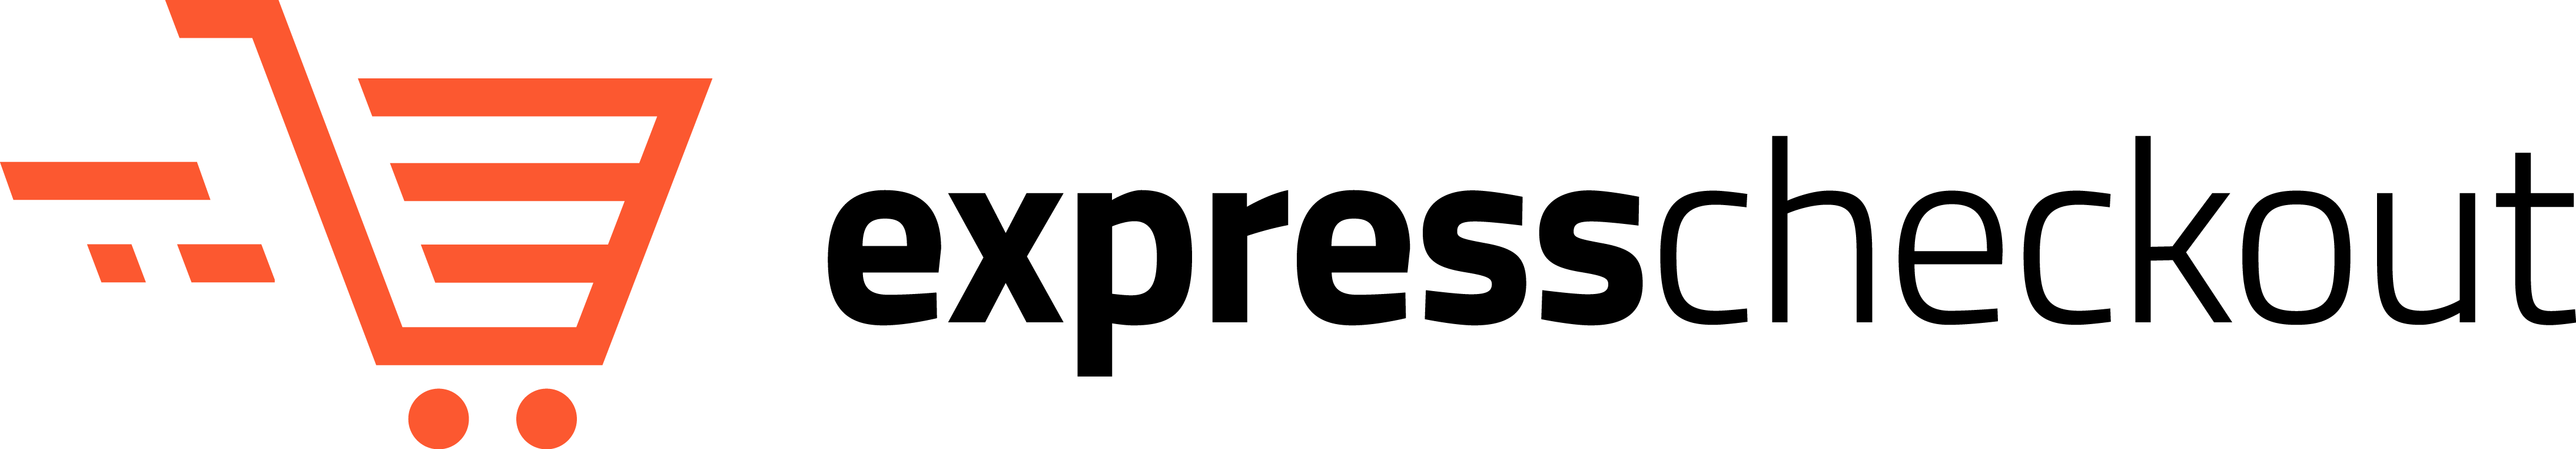 Express Checkout Logo